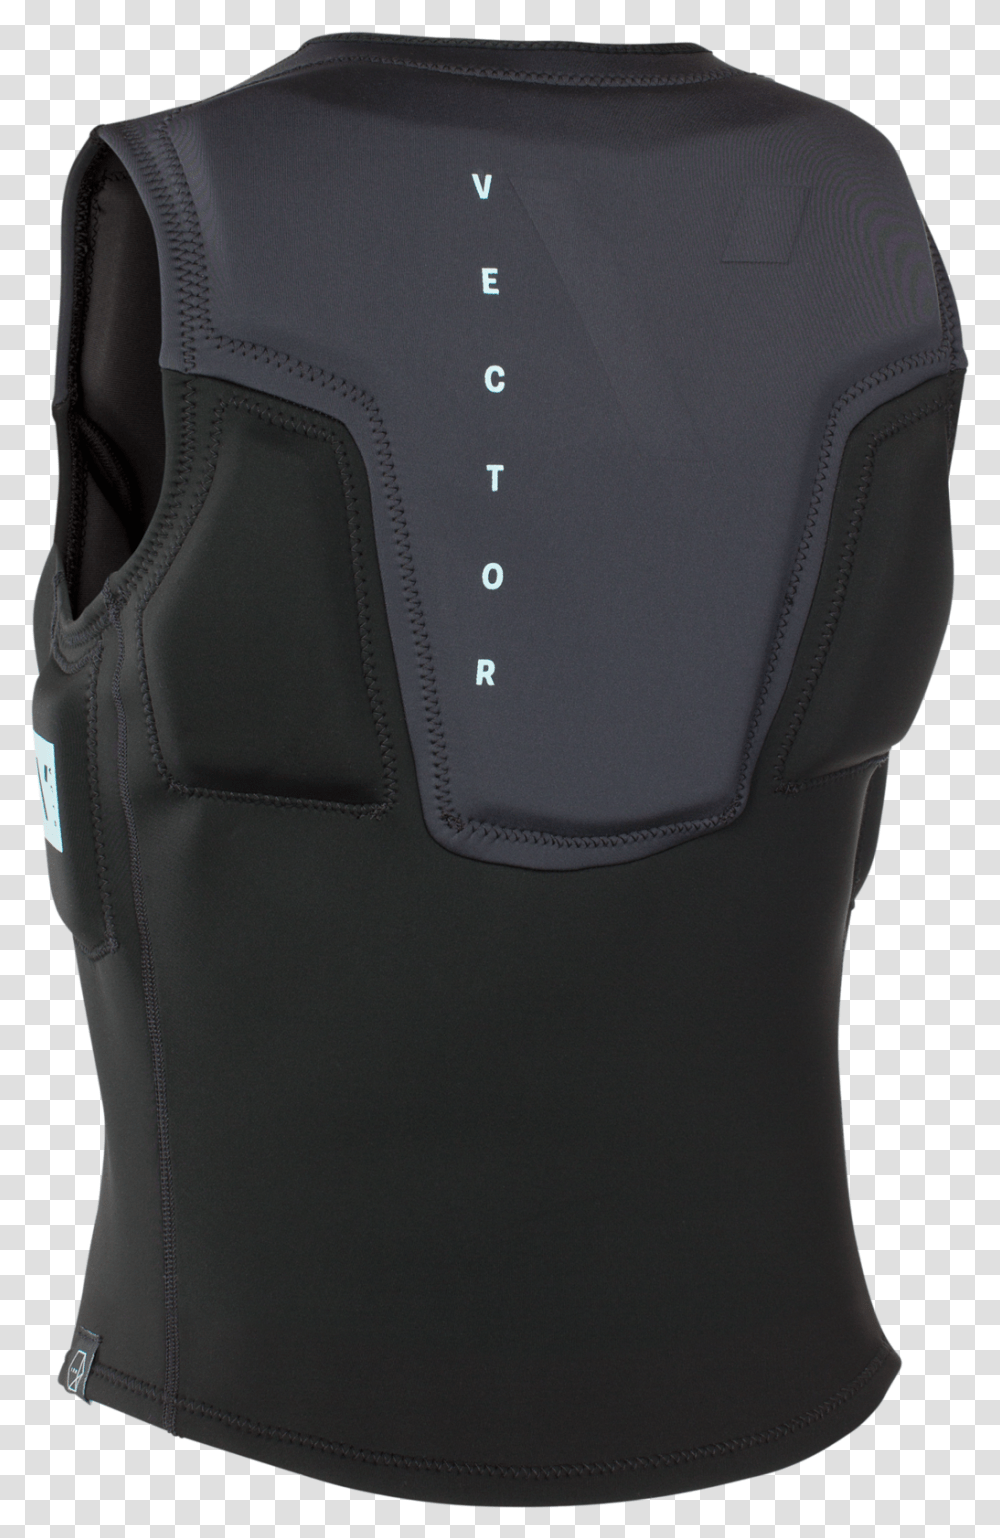 2019 Ion Vector Vest Amp FzClass Lazyload Lazyload Vest, Backpack, Bag, Apparel Transparent Png